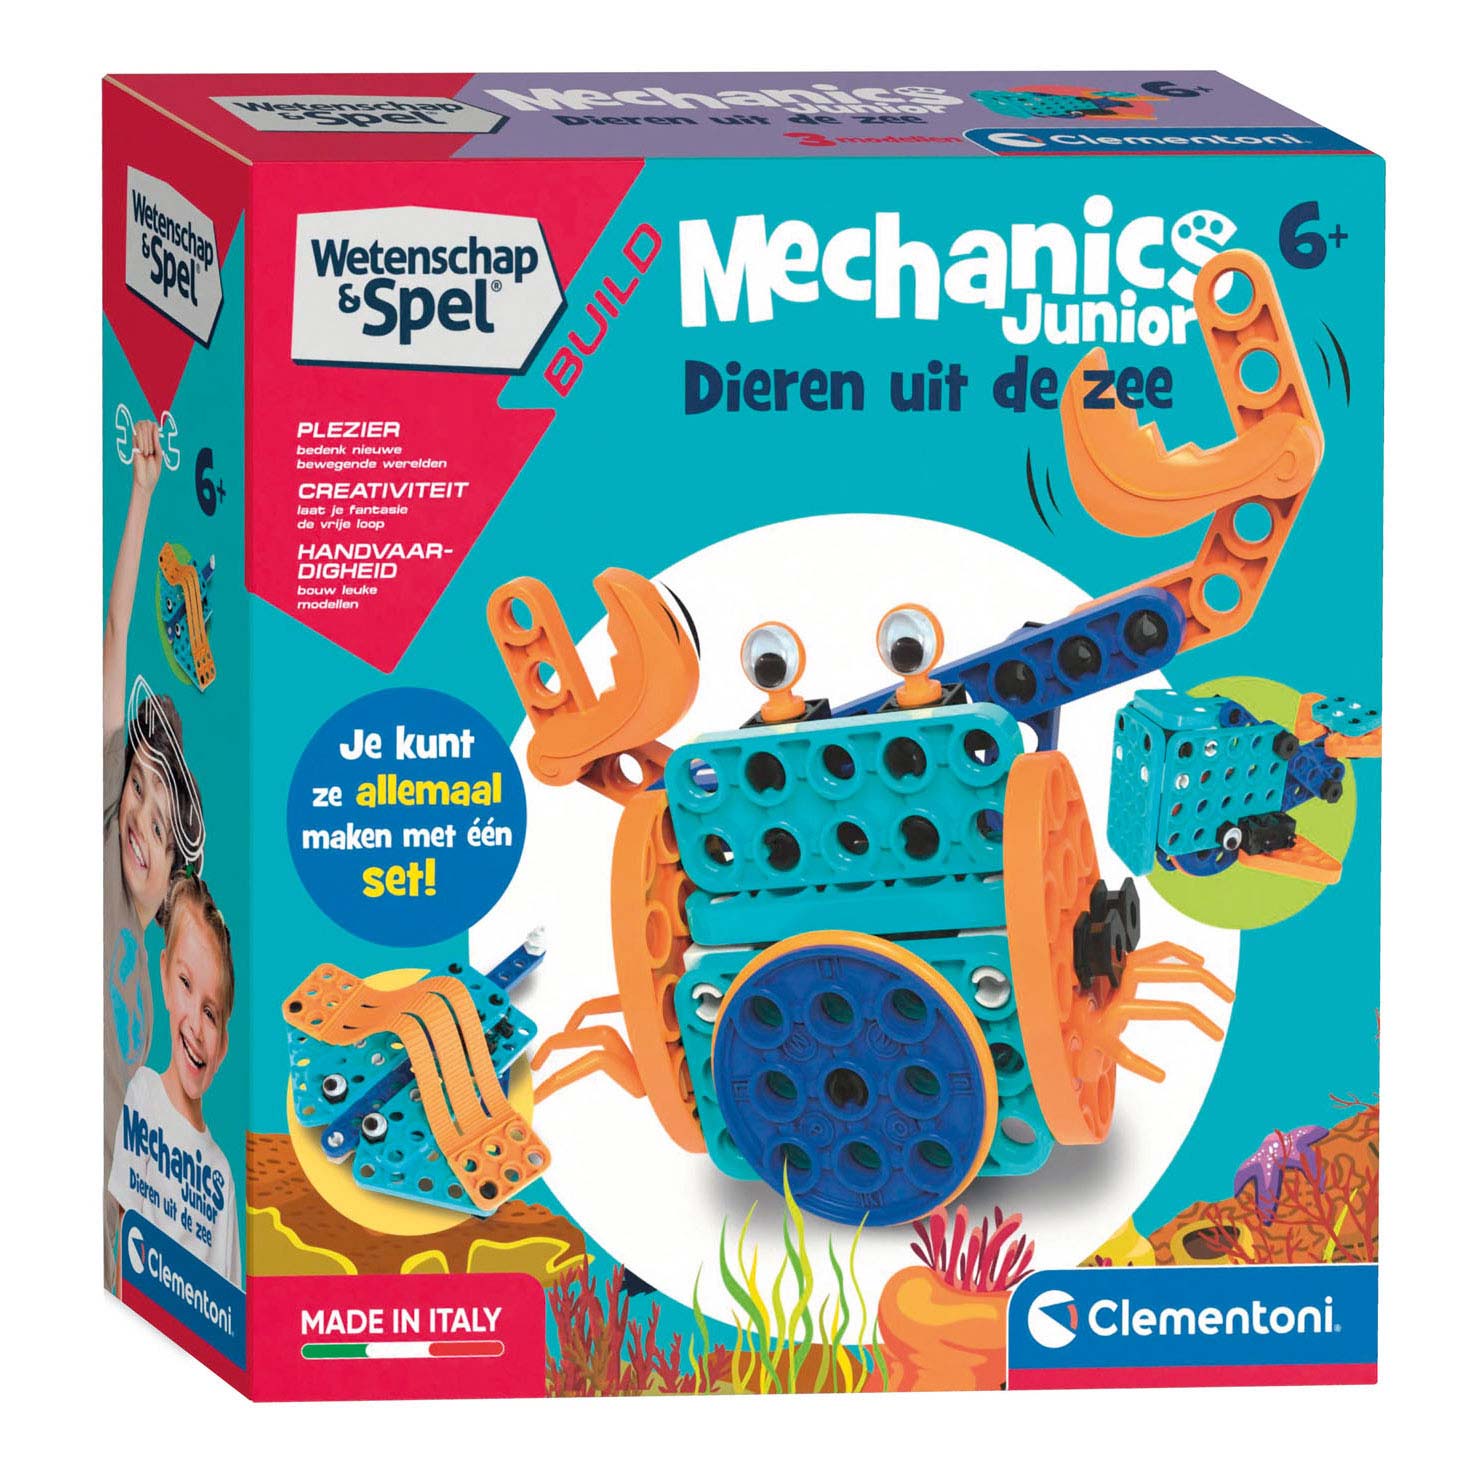 Clementoni - 97860 - Science and Play Build - Mechanics Junior Compendium -  Jeu de Construction pour Enfants, Animaux à Assembler, Jeu Scientifique 6